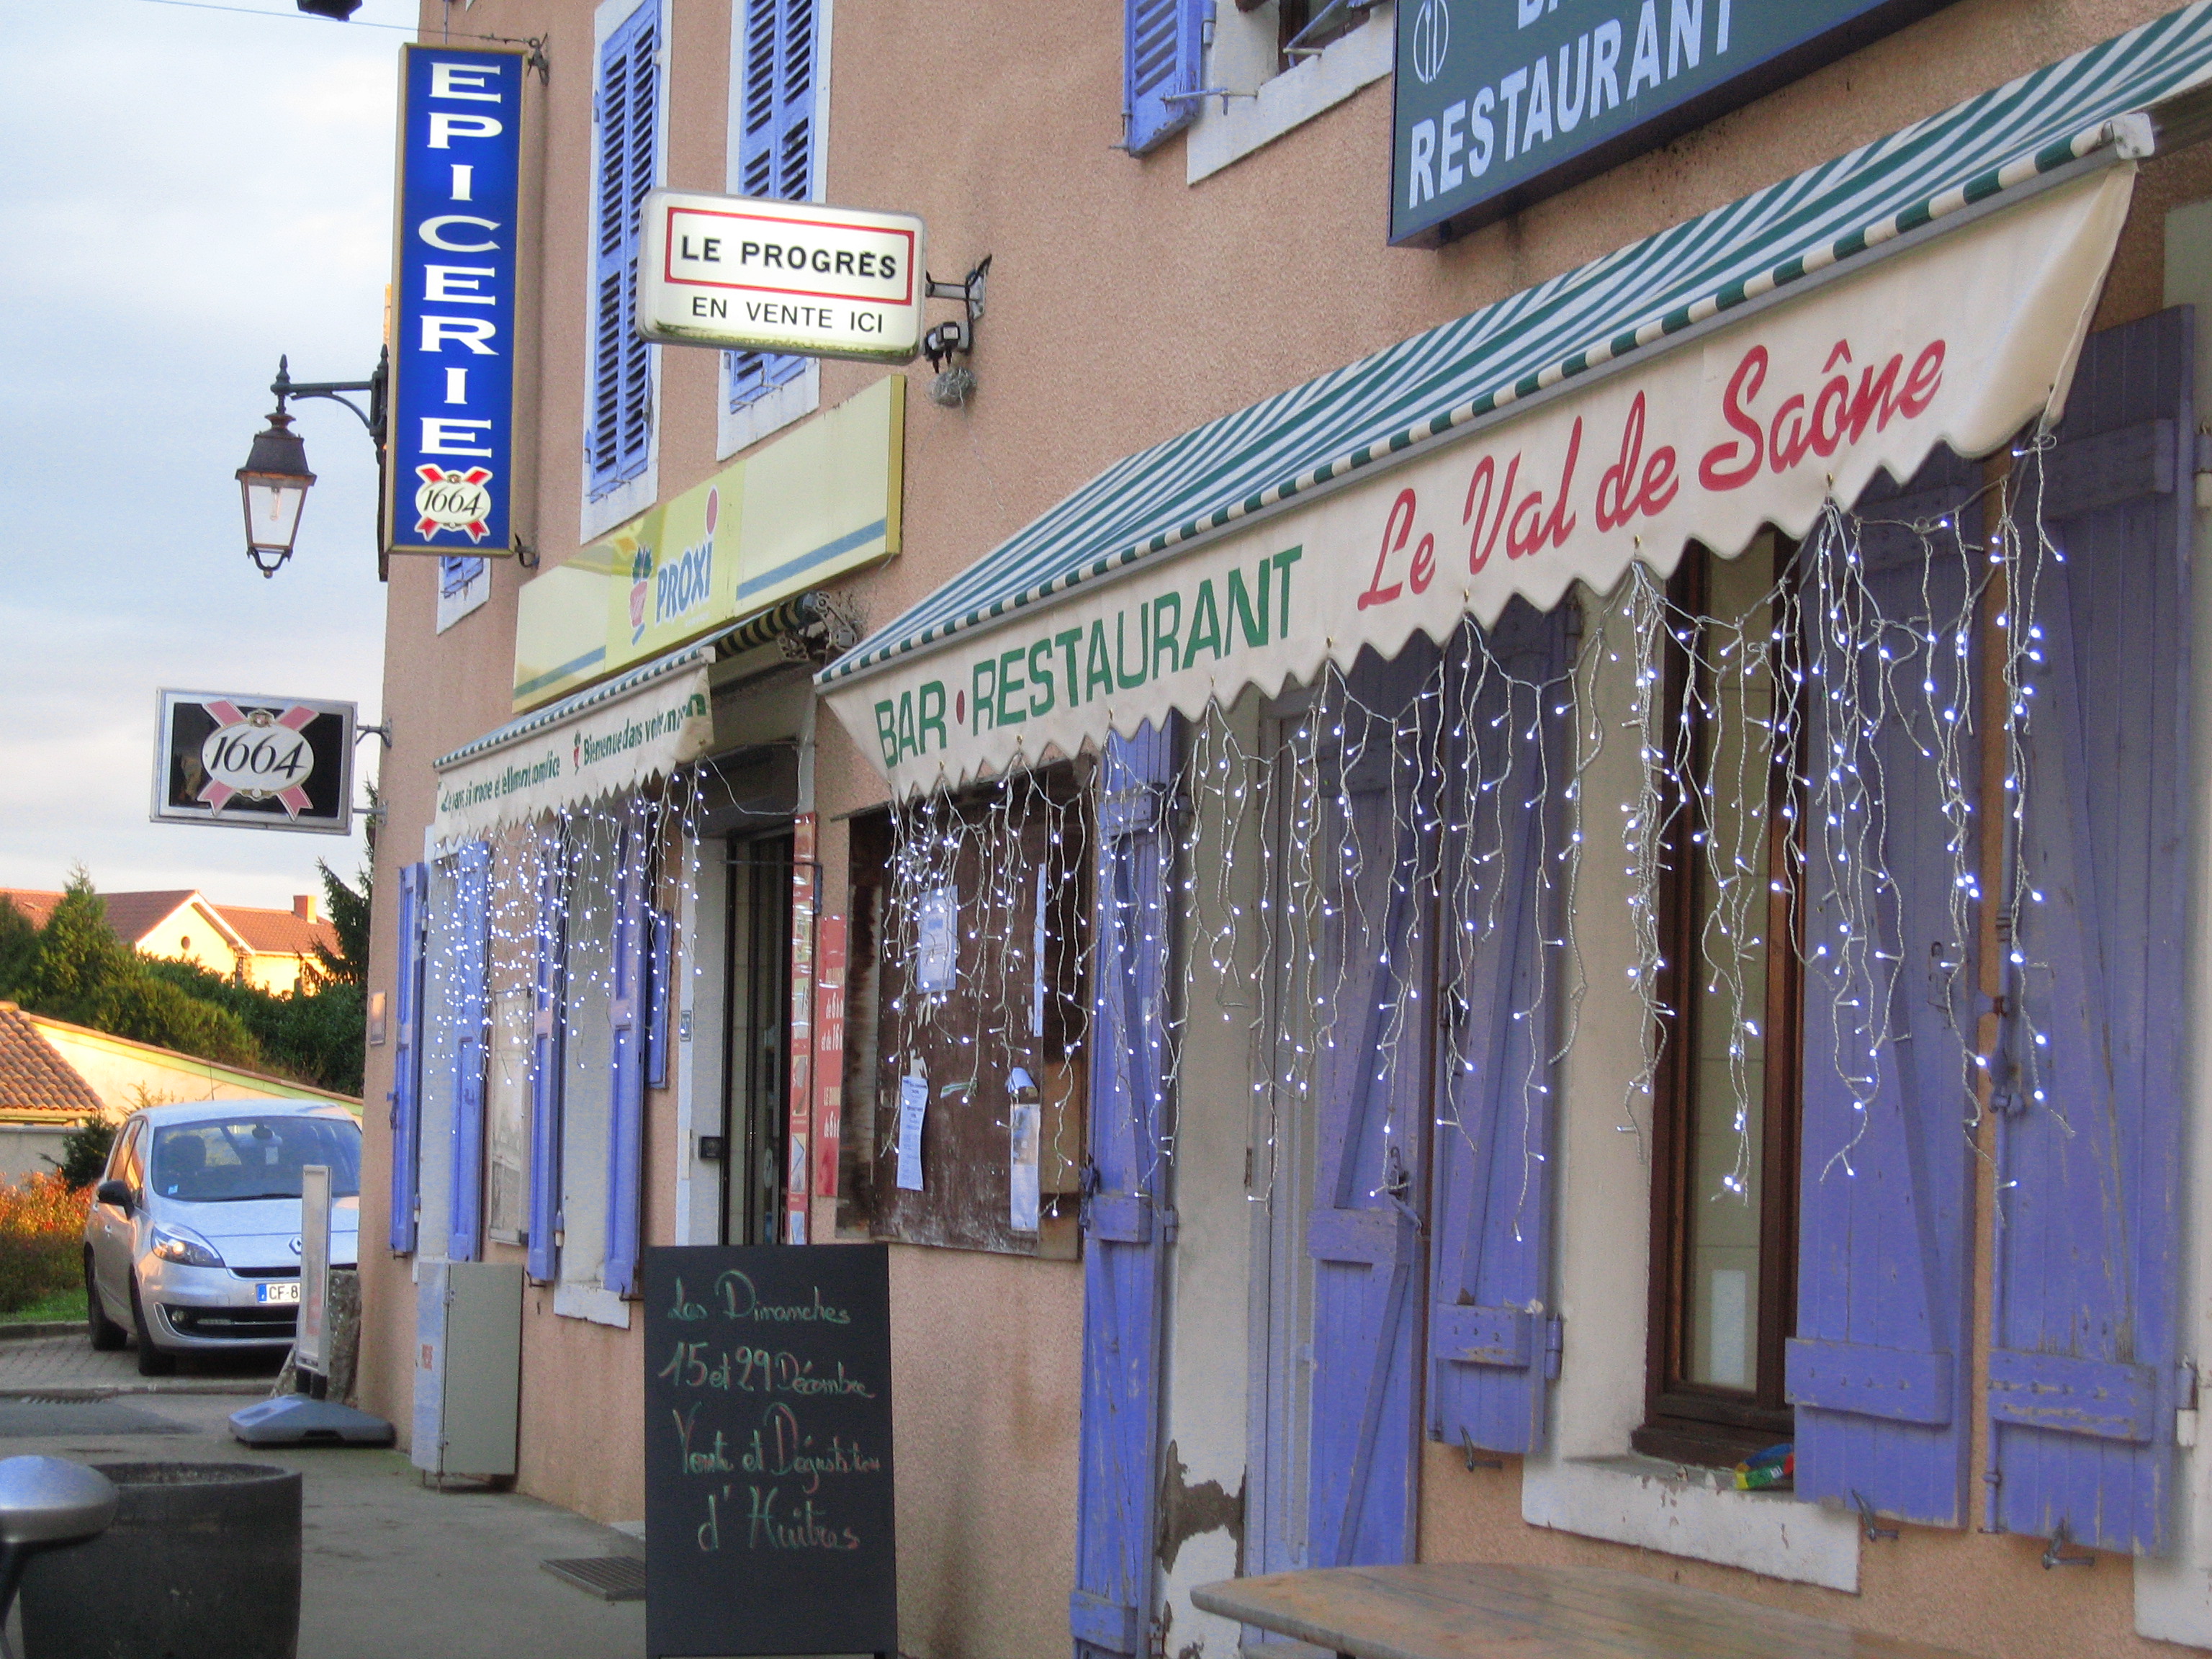 Recherche repreneur pour fond de commerce multiservices au centre du village de Messimy-sur-Saône (01480) pour épicerie, dépôt de pain, petite restauration (plat du jour).
La commune dispose de la licence IV.
Commune de 1 300 habitants.